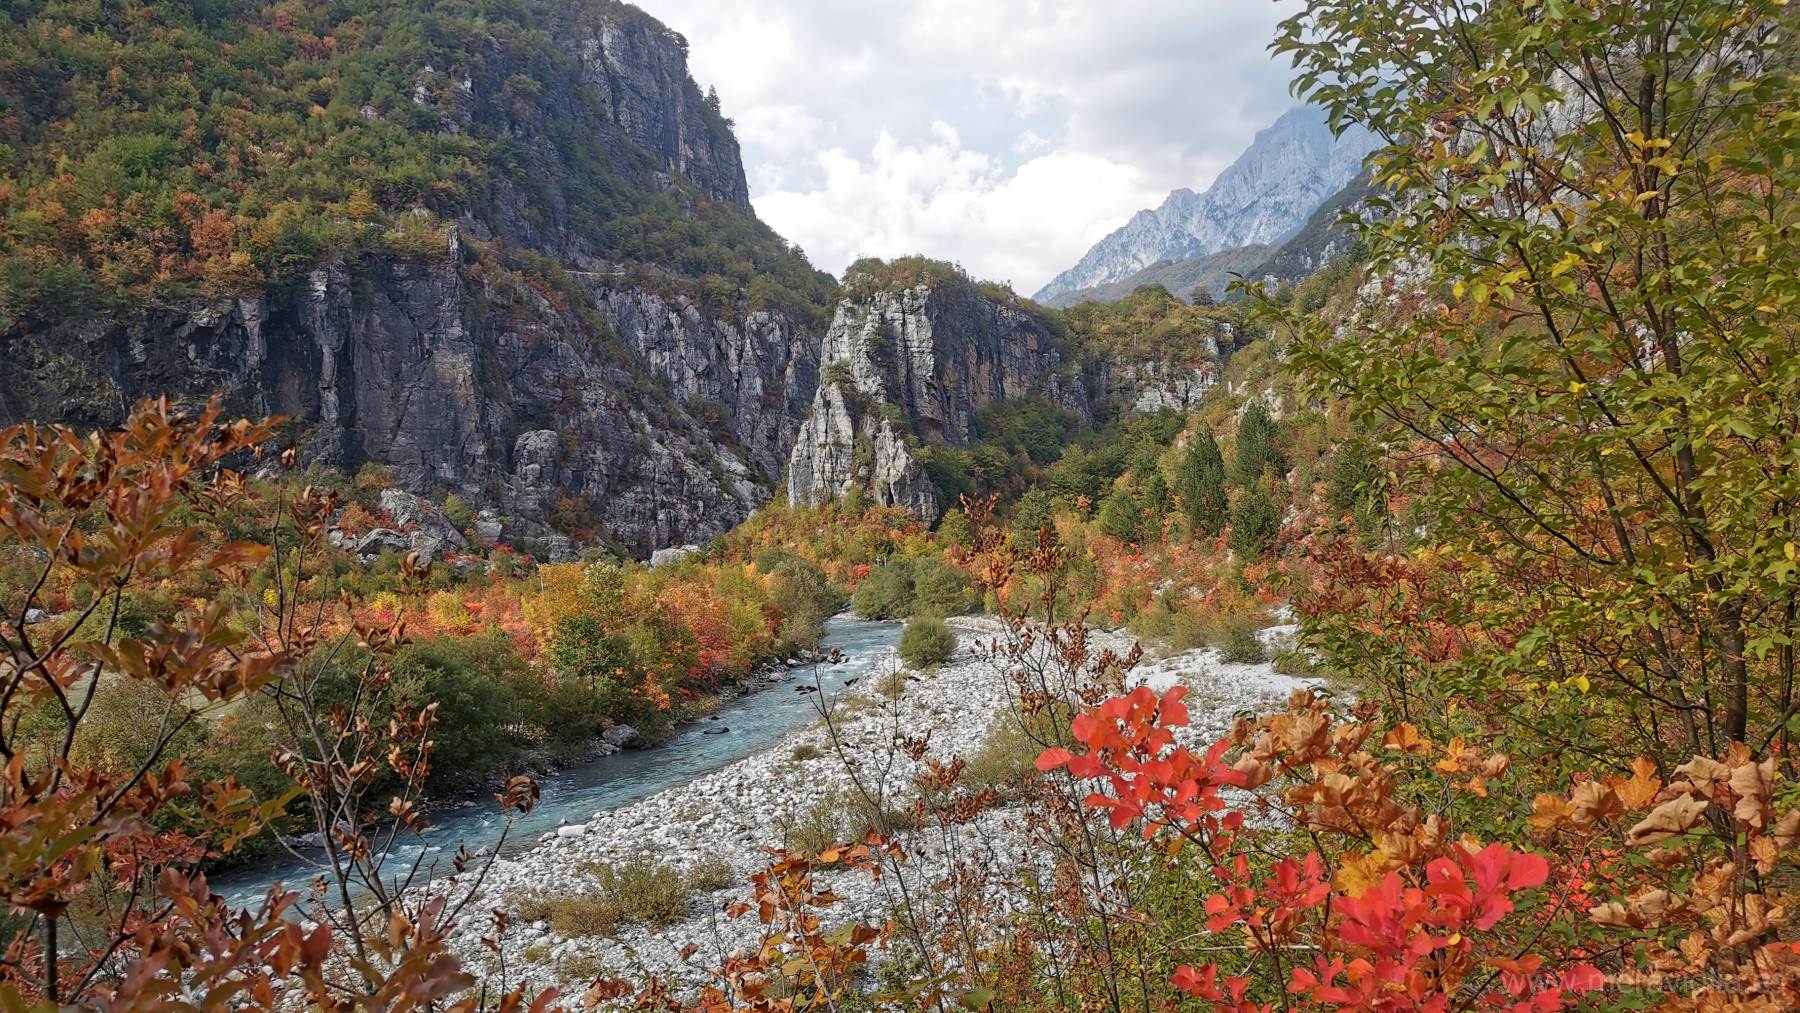 Paisaje de los Alpes albaneses con colores verdes, rojos y amarillos del otoño.